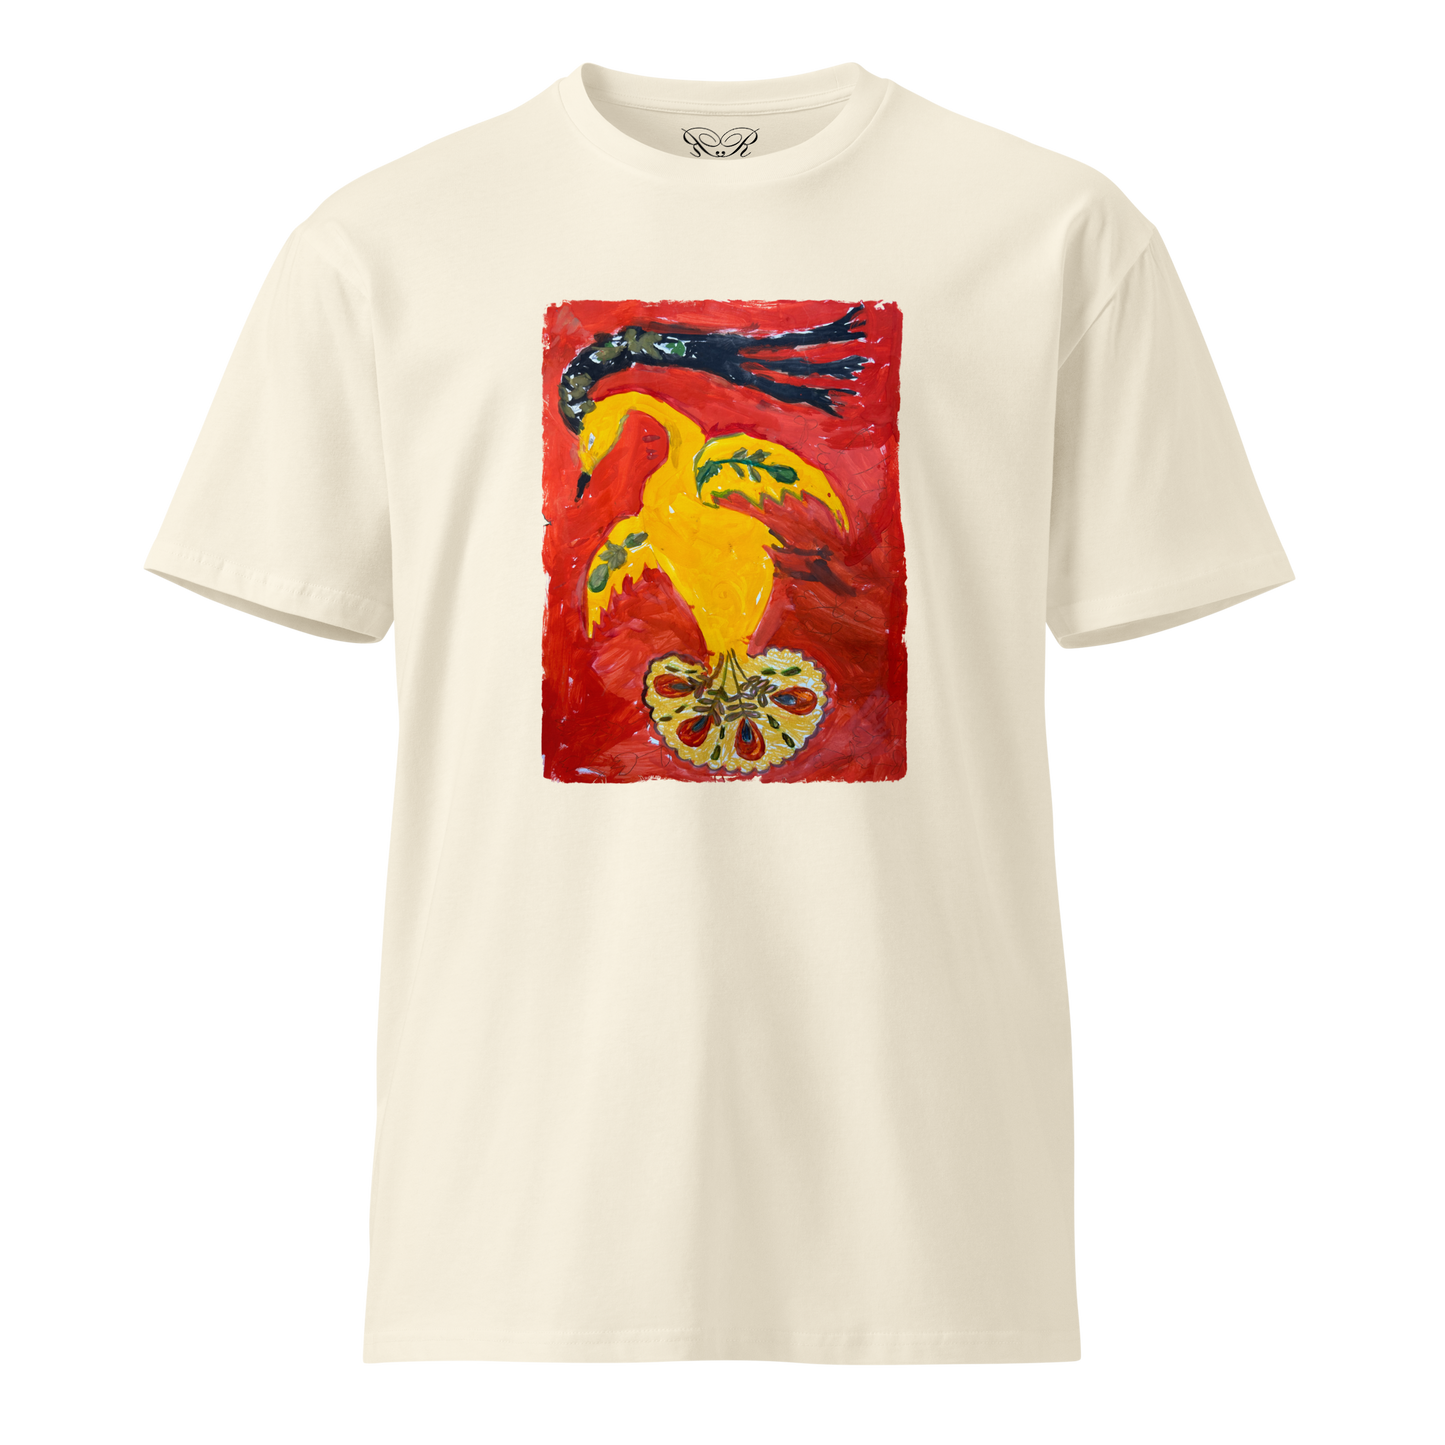 Unisex premium t-shirt "Firebird"